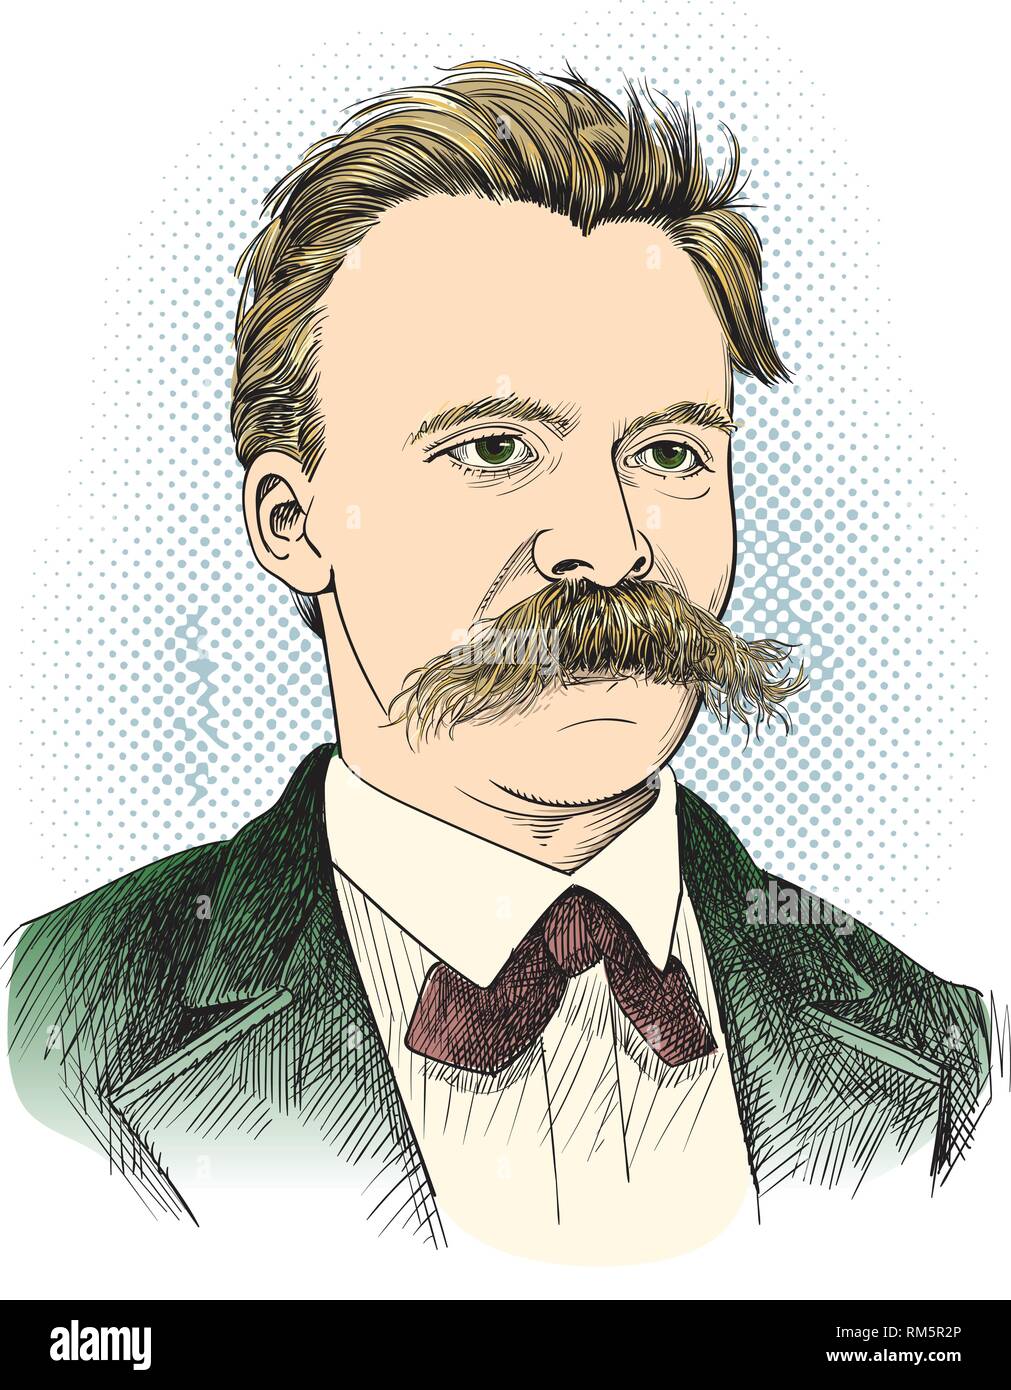 Friedrich Nietzsche ritratto in linea tecnica illustrazione. Egli era filosofo tedesco, filologo, poeta, compositore e studioso di musica classica. Livelli modificabili. Illustrazione Vettoriale